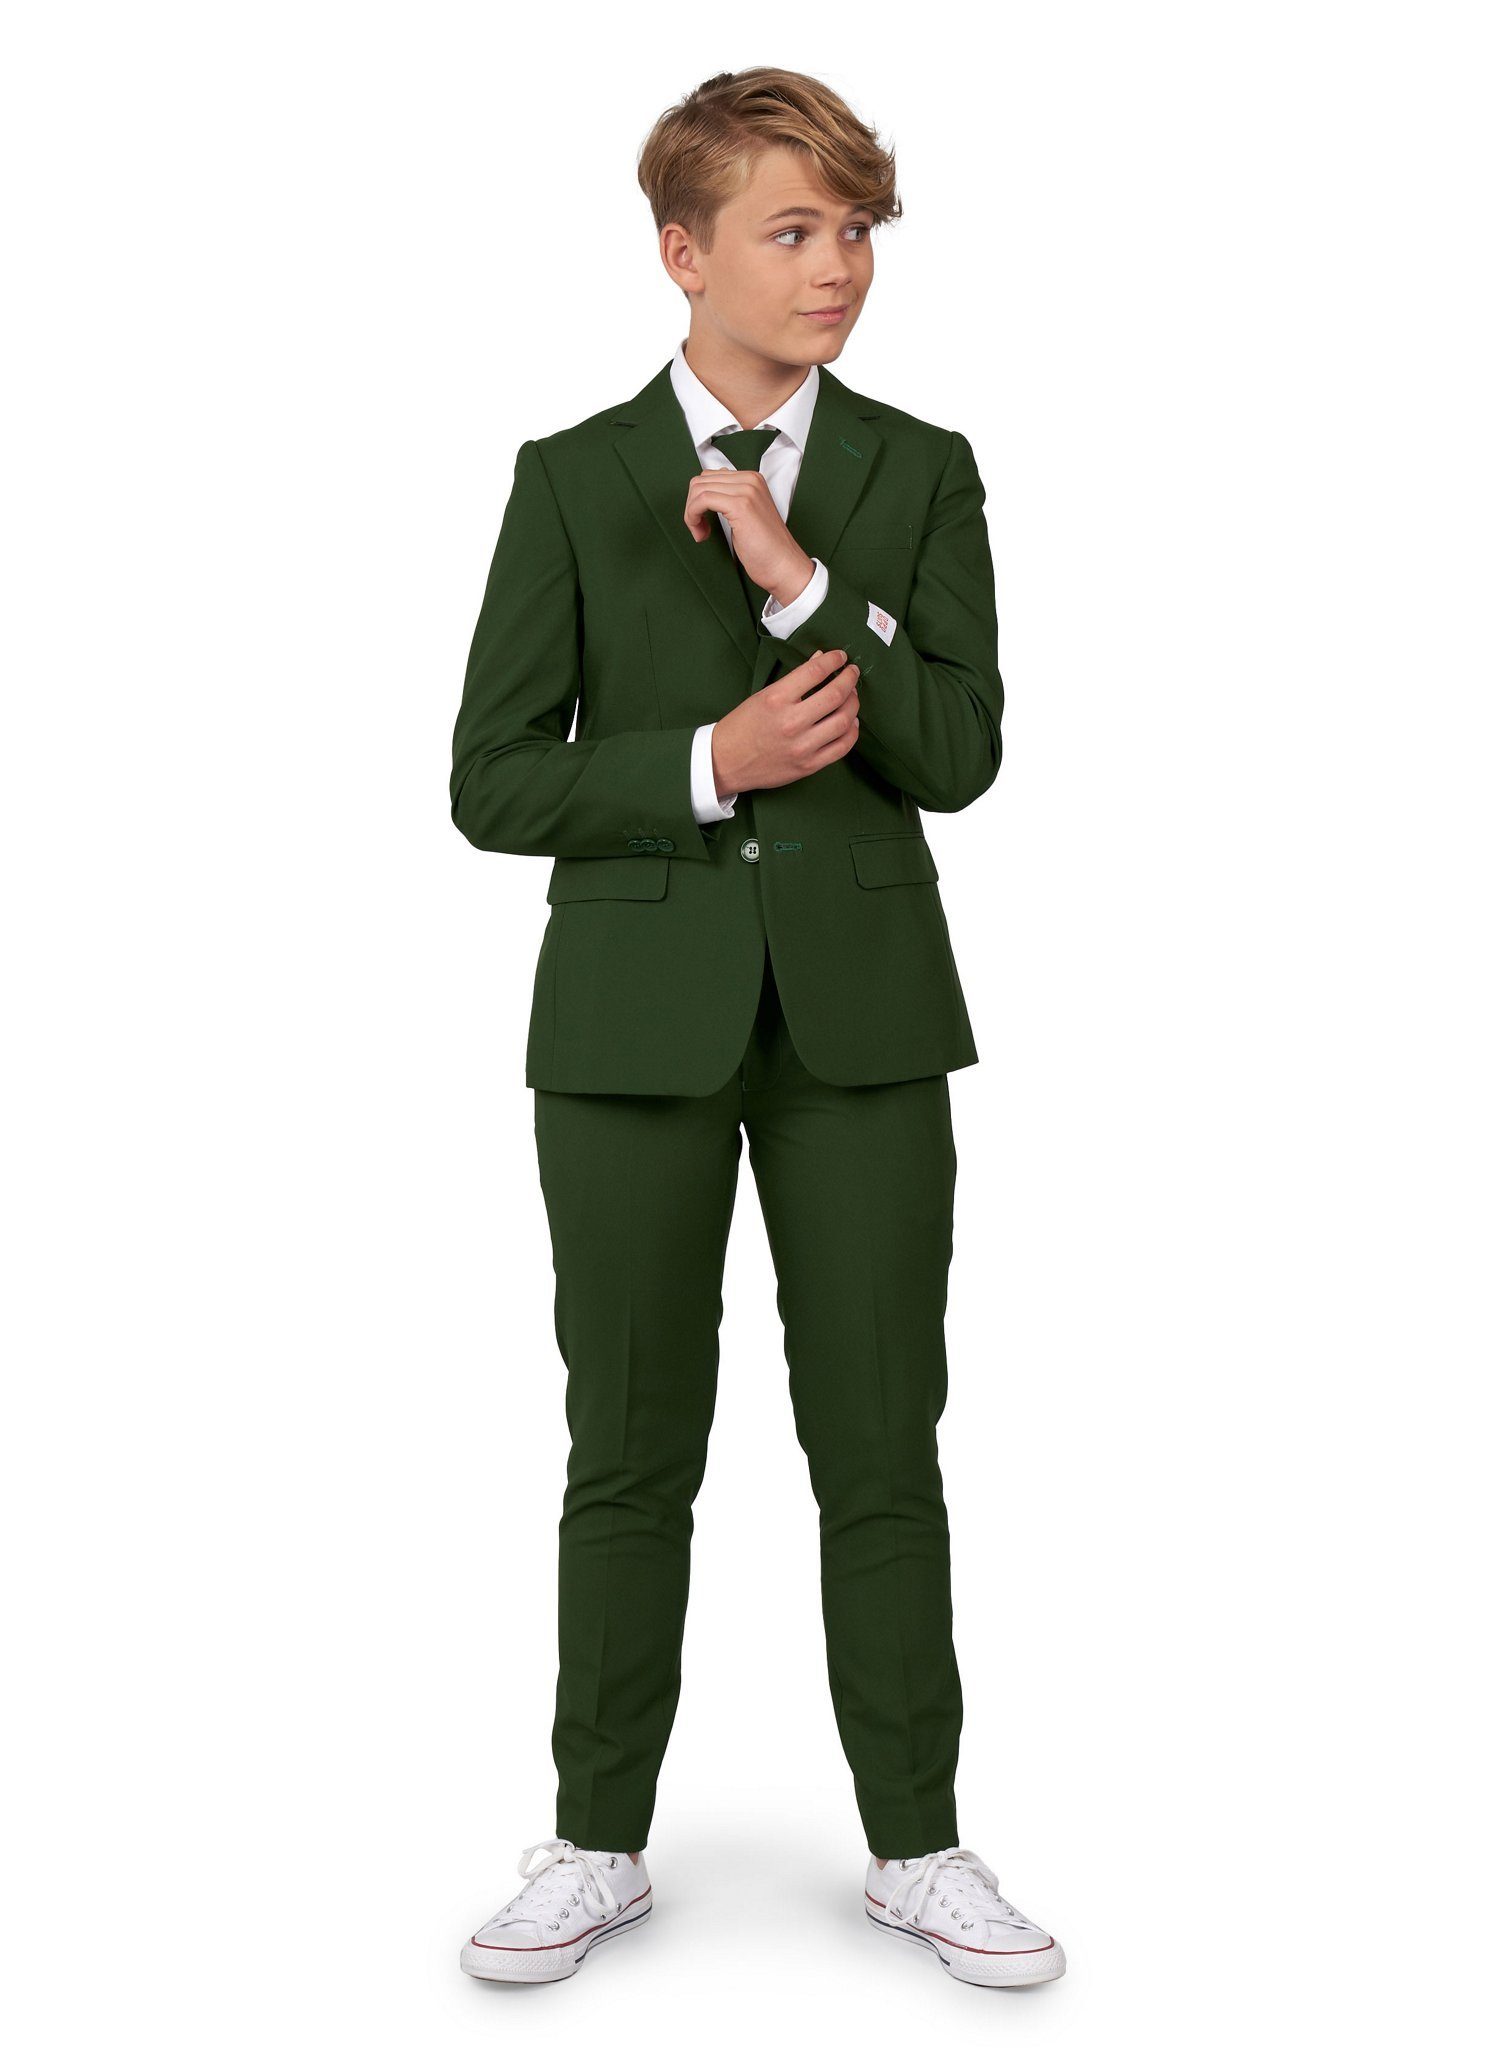 Opposuits Kinderanzug Teen Glorious Green Anzug für Jugendliche 40